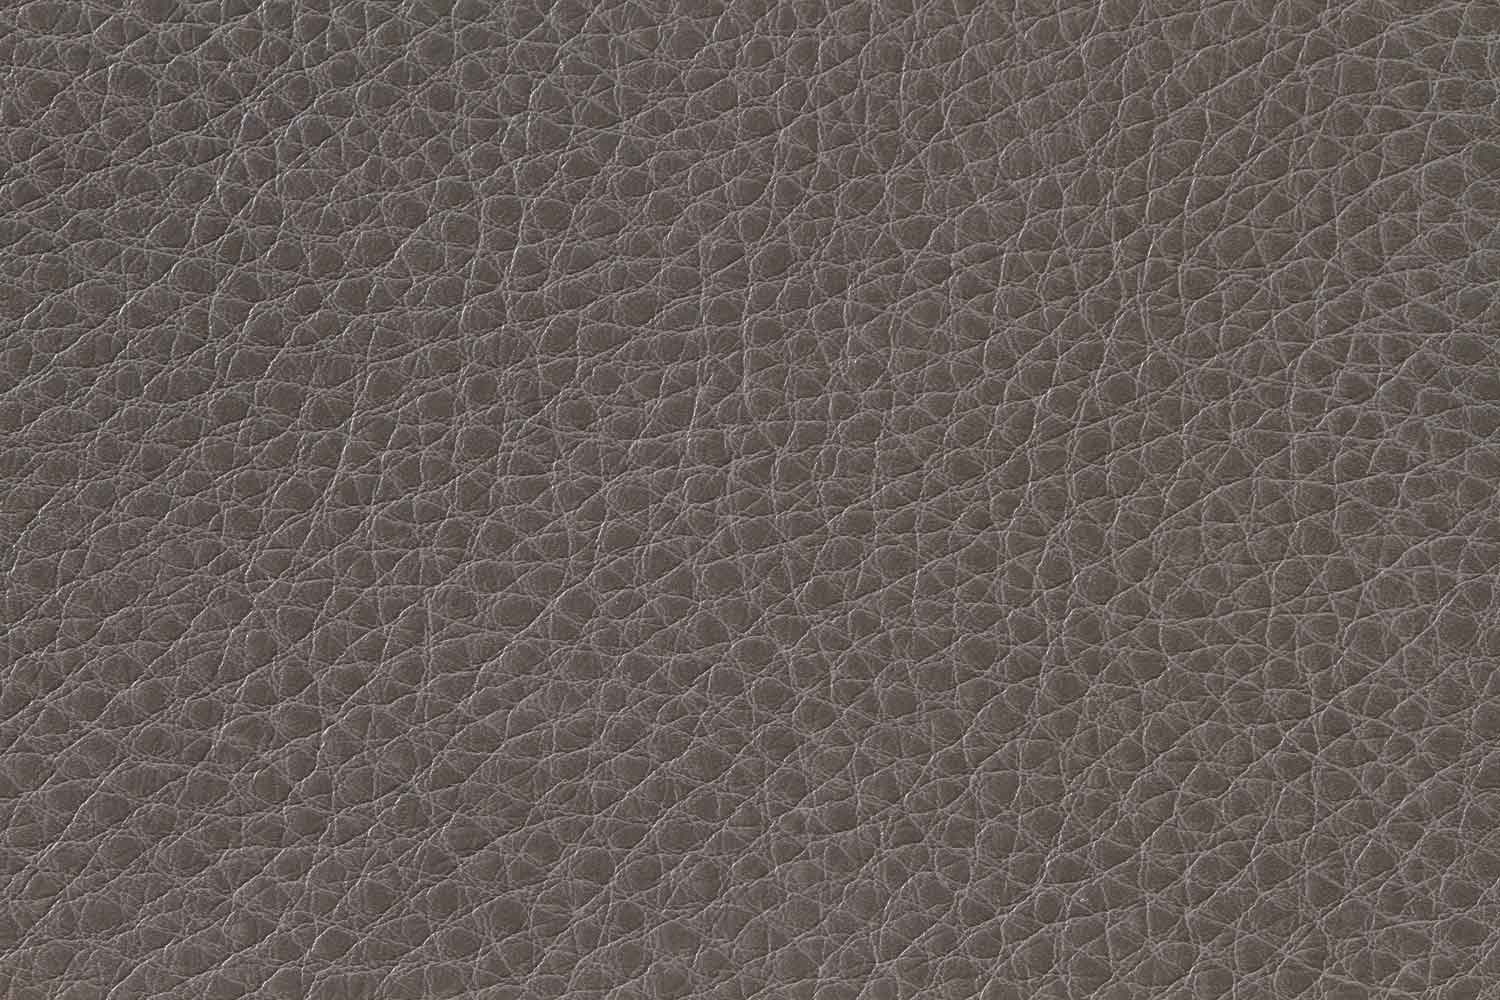 Homelegance Springer Sectional Sofa - Grey - Bonded Leather Match